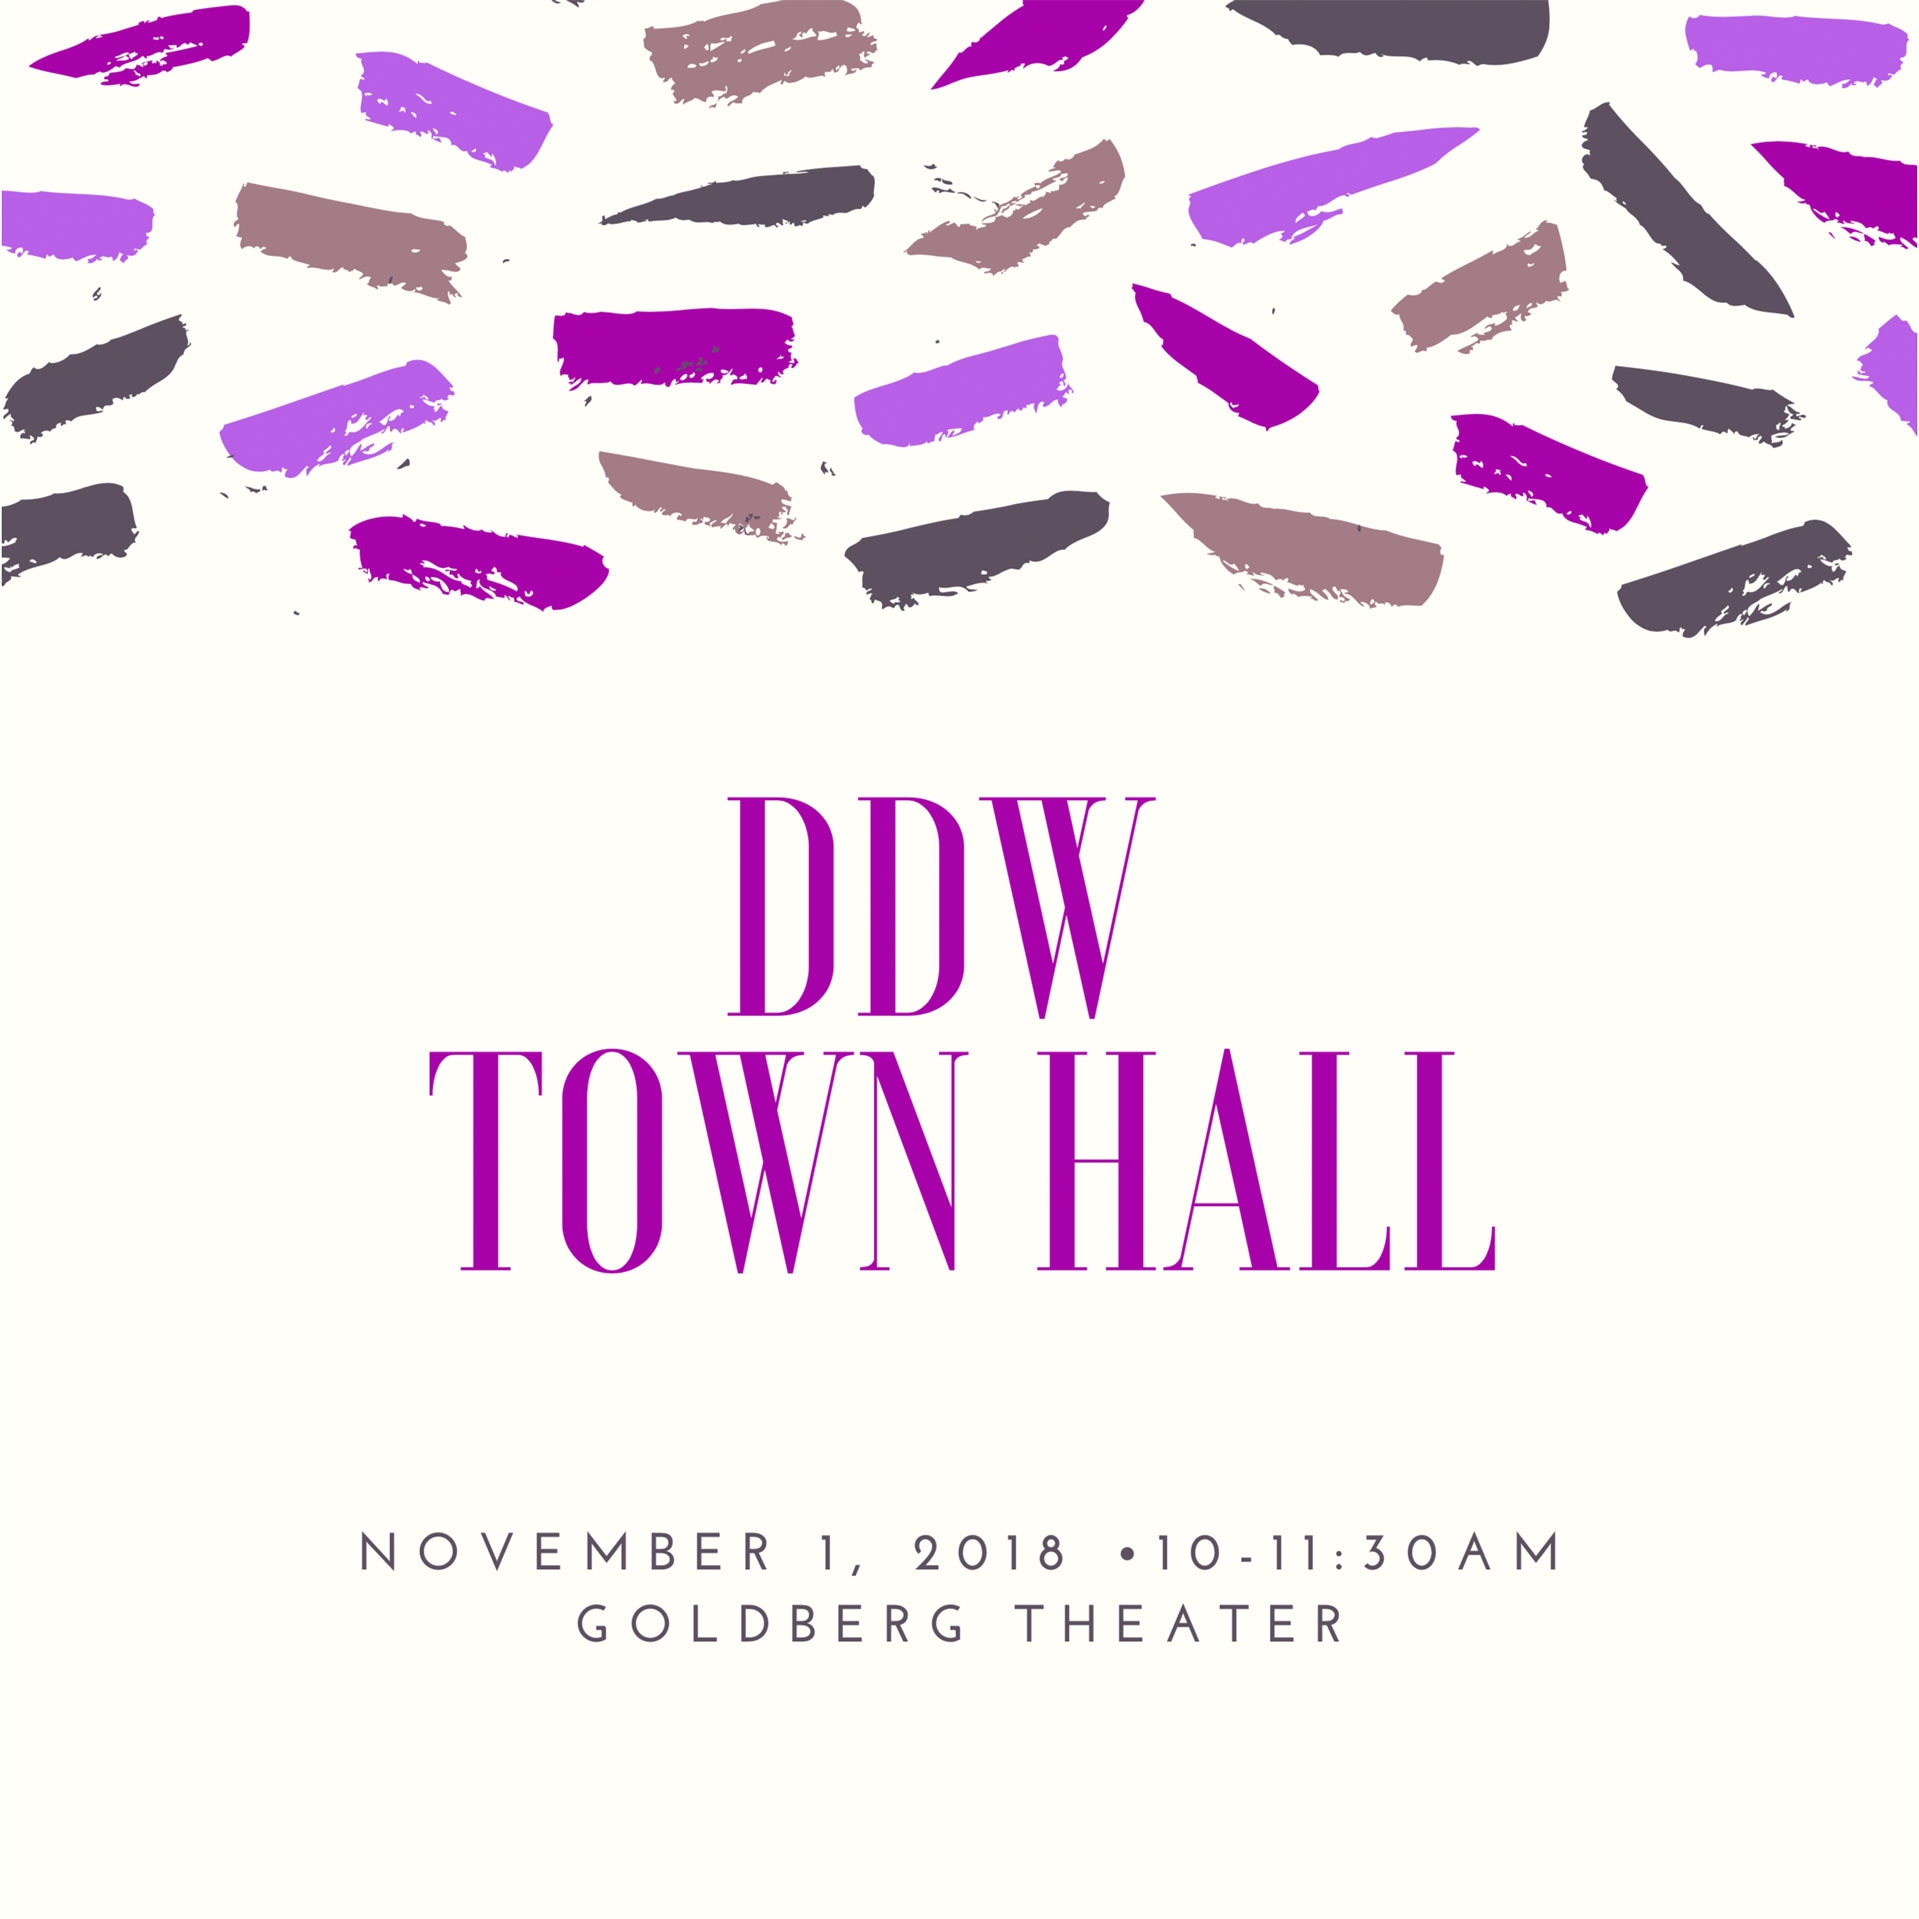 DDW Town Hall